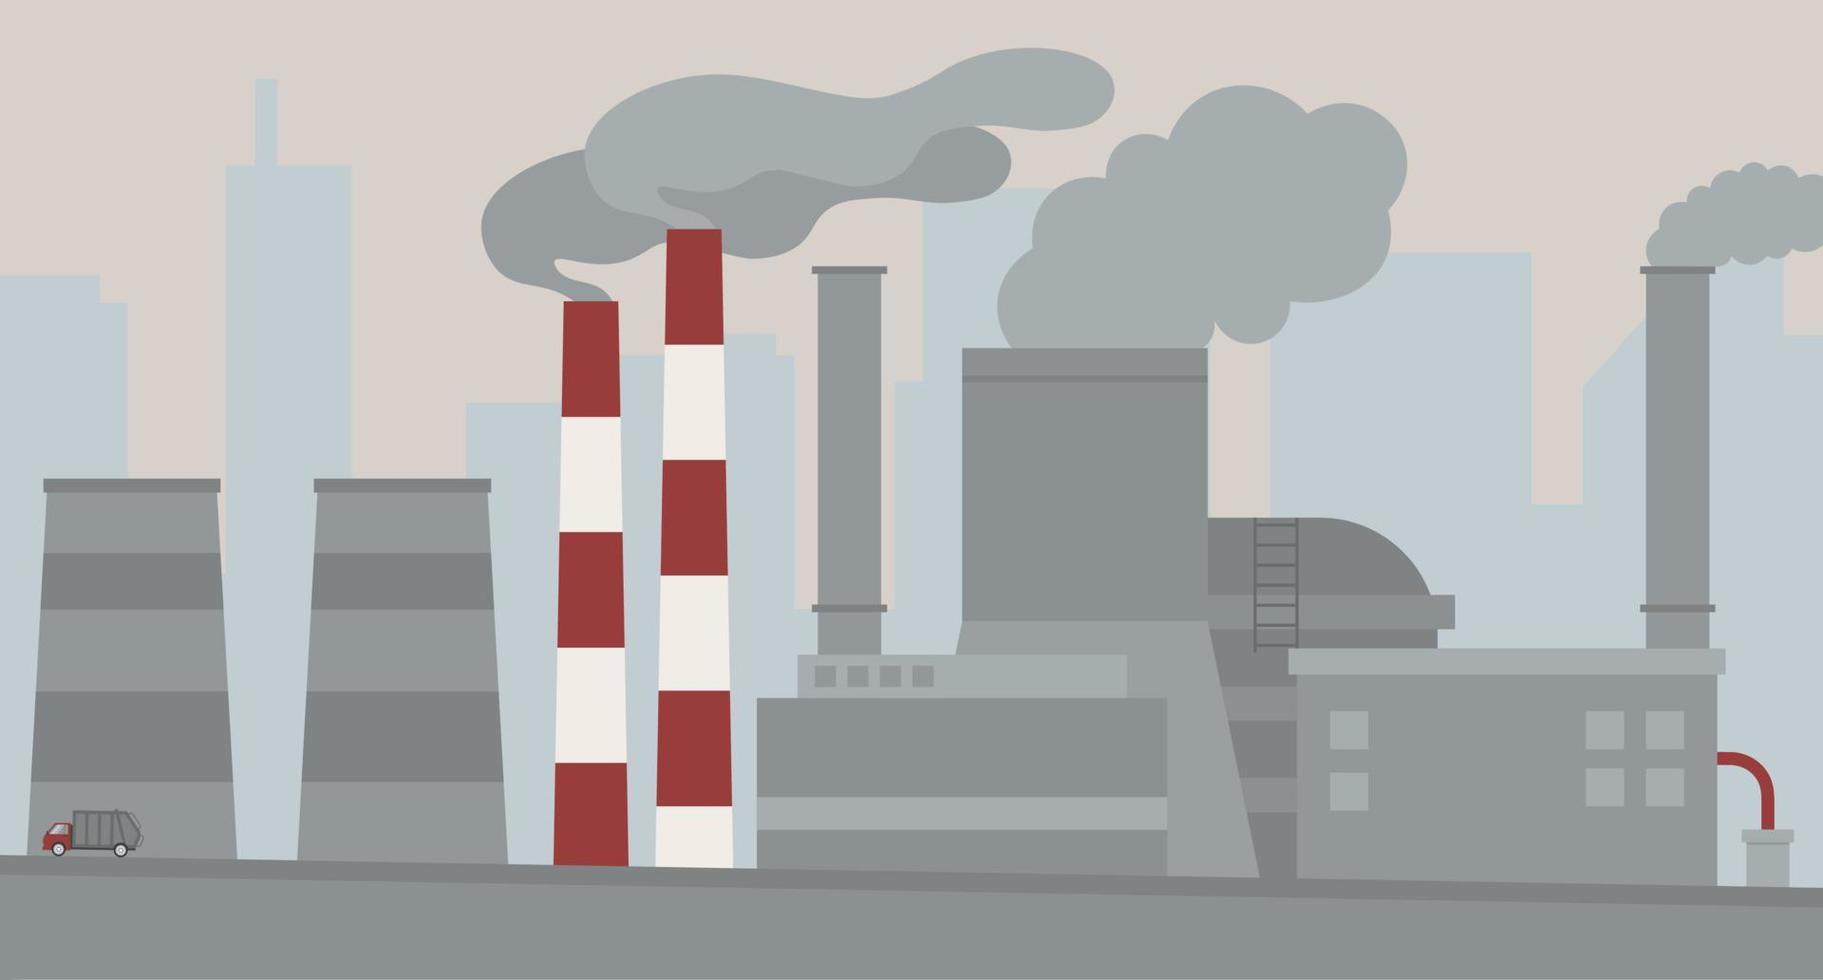 luft förorening. industriell fabriker med avgaser. ekologi problem vektor illustration i platt stil